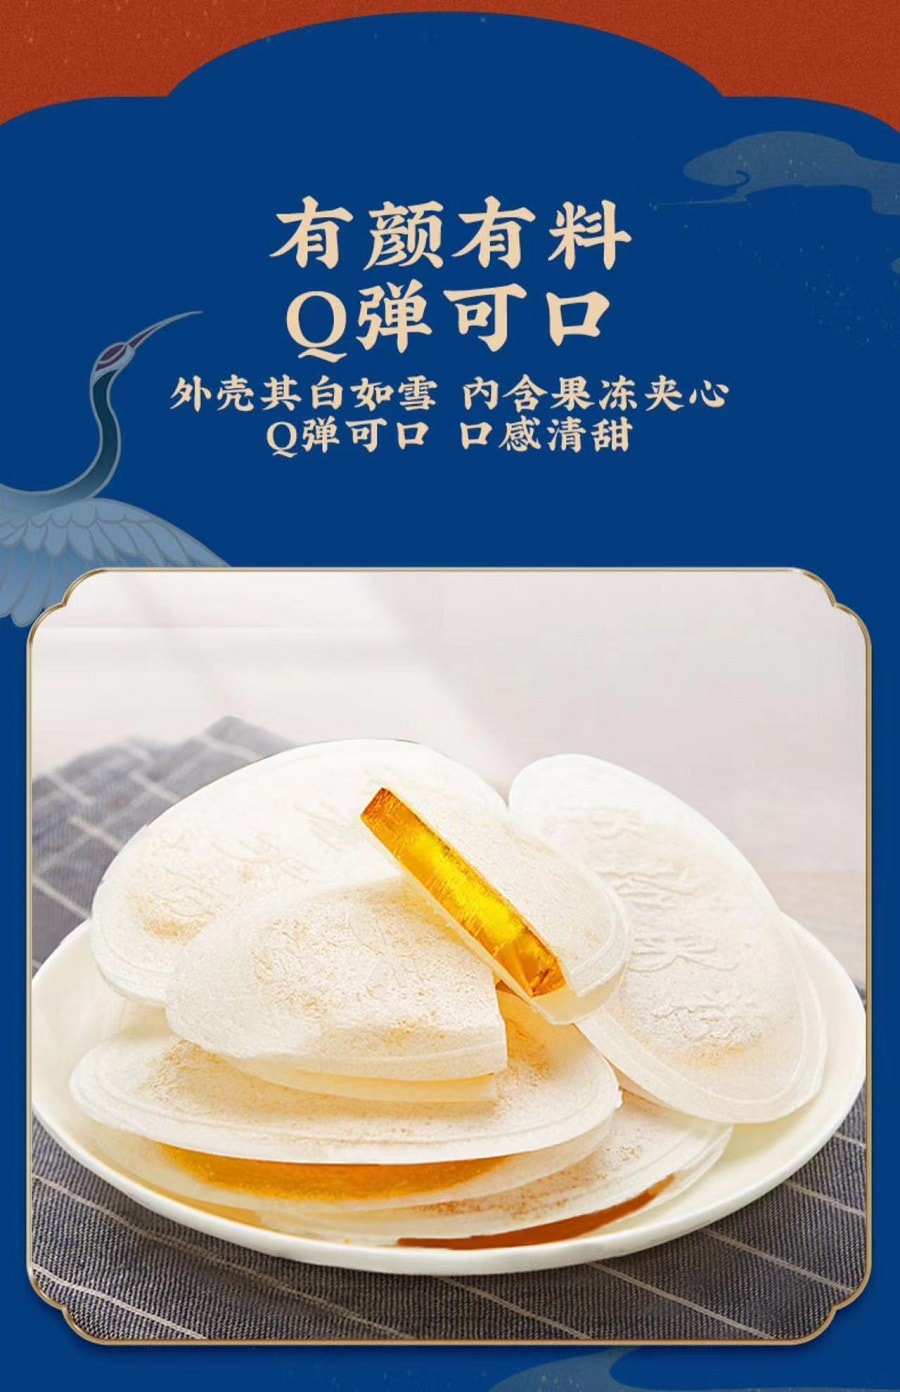 御食园老北京风味茯苓夹饼六种口味混合装120克 (促销)